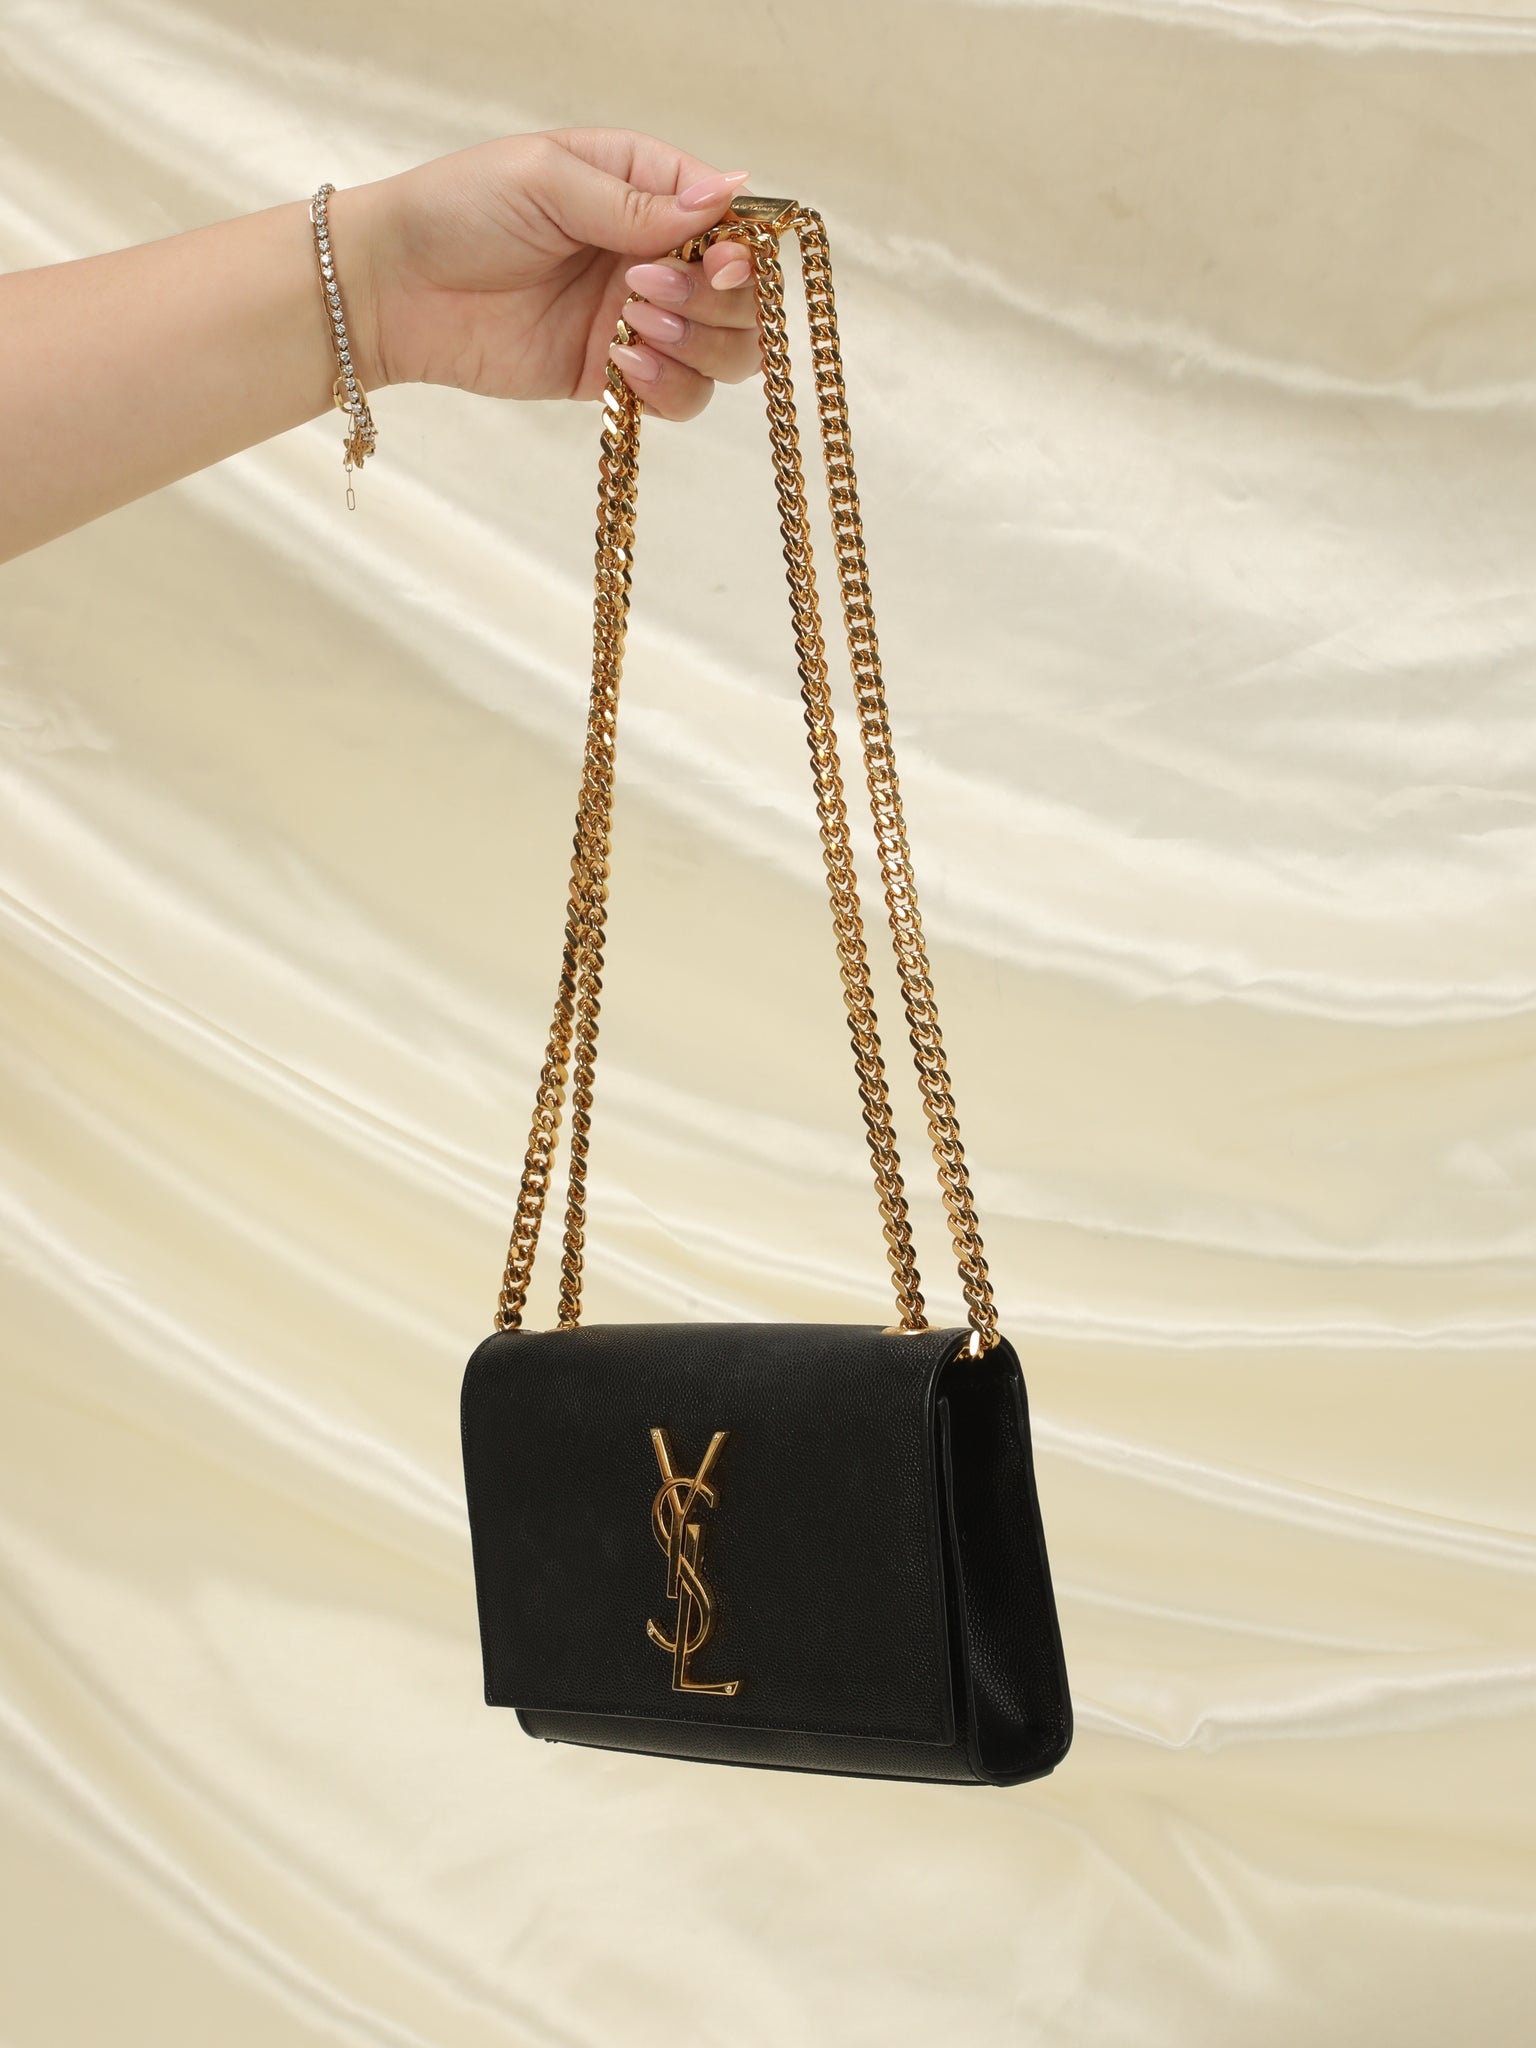 Saint Laurent Small Kate Bag Review YSL Size Comparison & Modelled Photos 